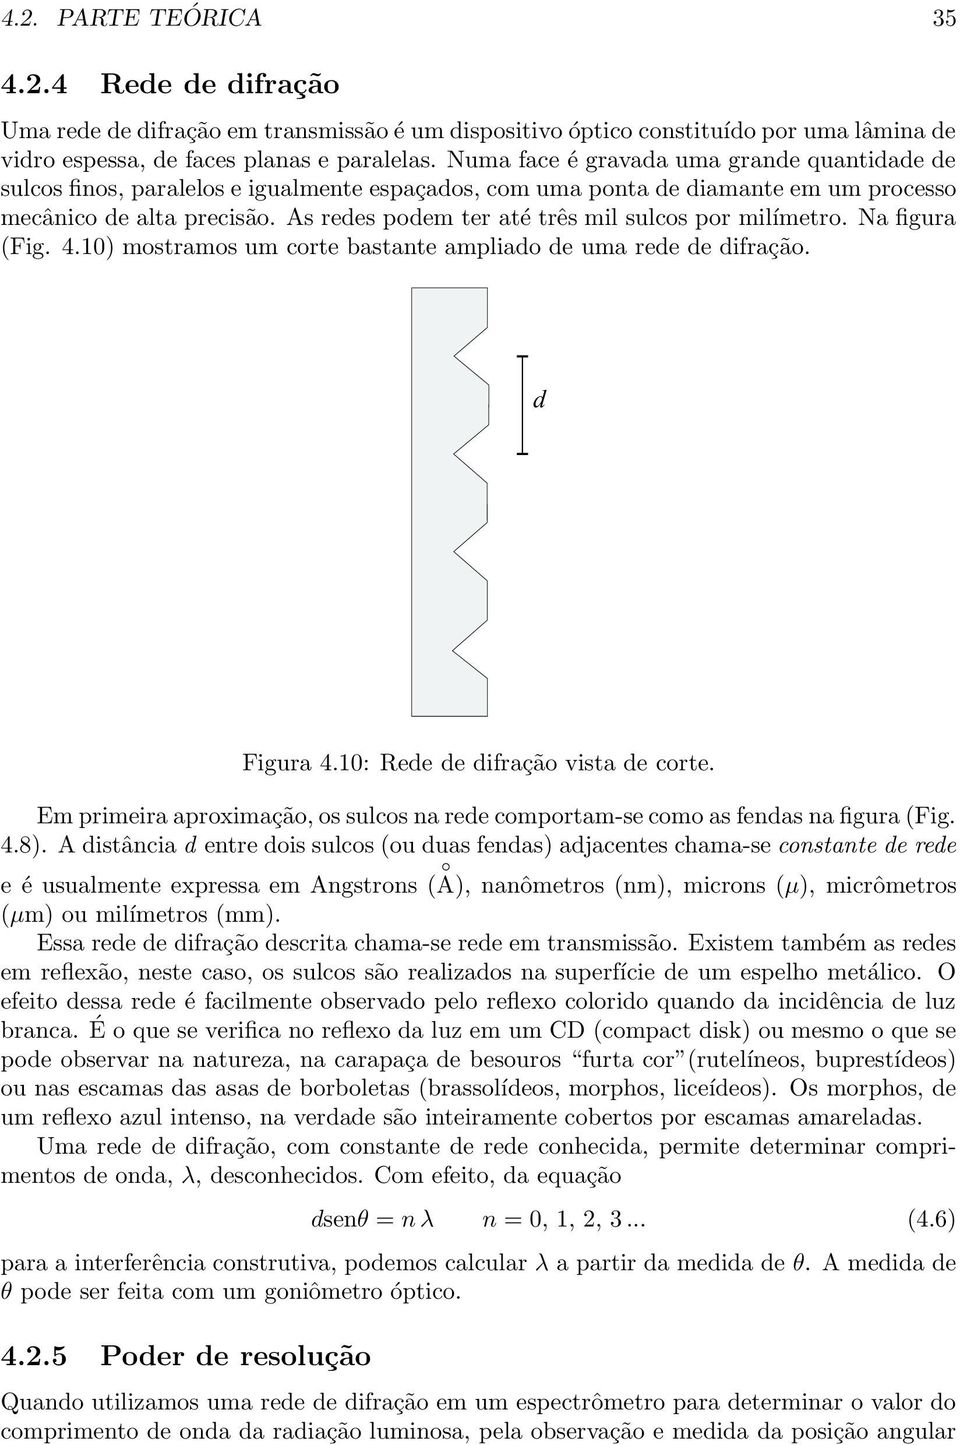 As rees poem ter até três mil sulcos por milímetro. Na figura (Fig. 4.10) mostramos um corte bastante ampliao e uma ree e ifração. Figura 4.10: Ree e ifração vista e corte.